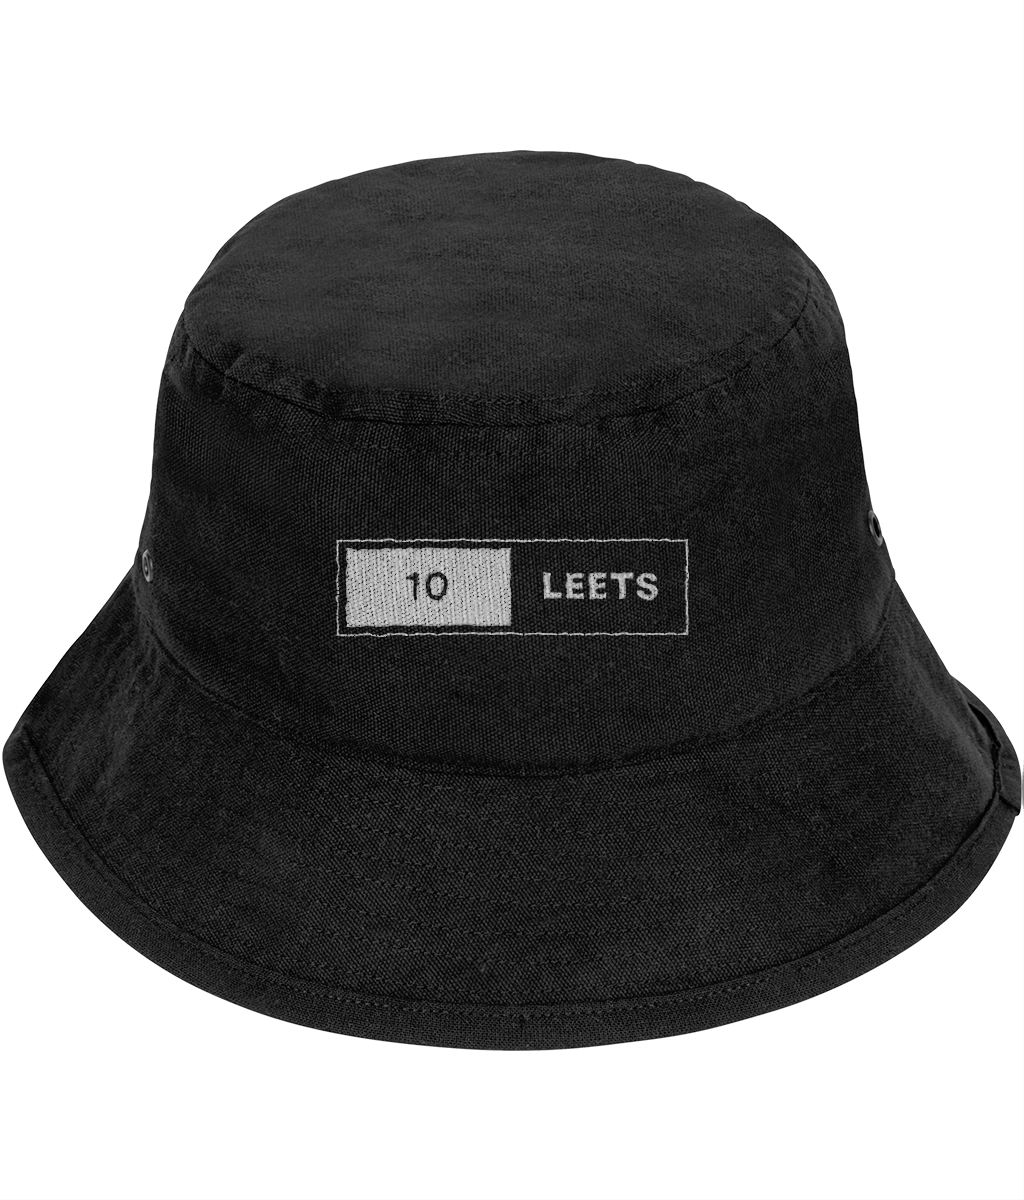 10 Leets Bucket Hat Black